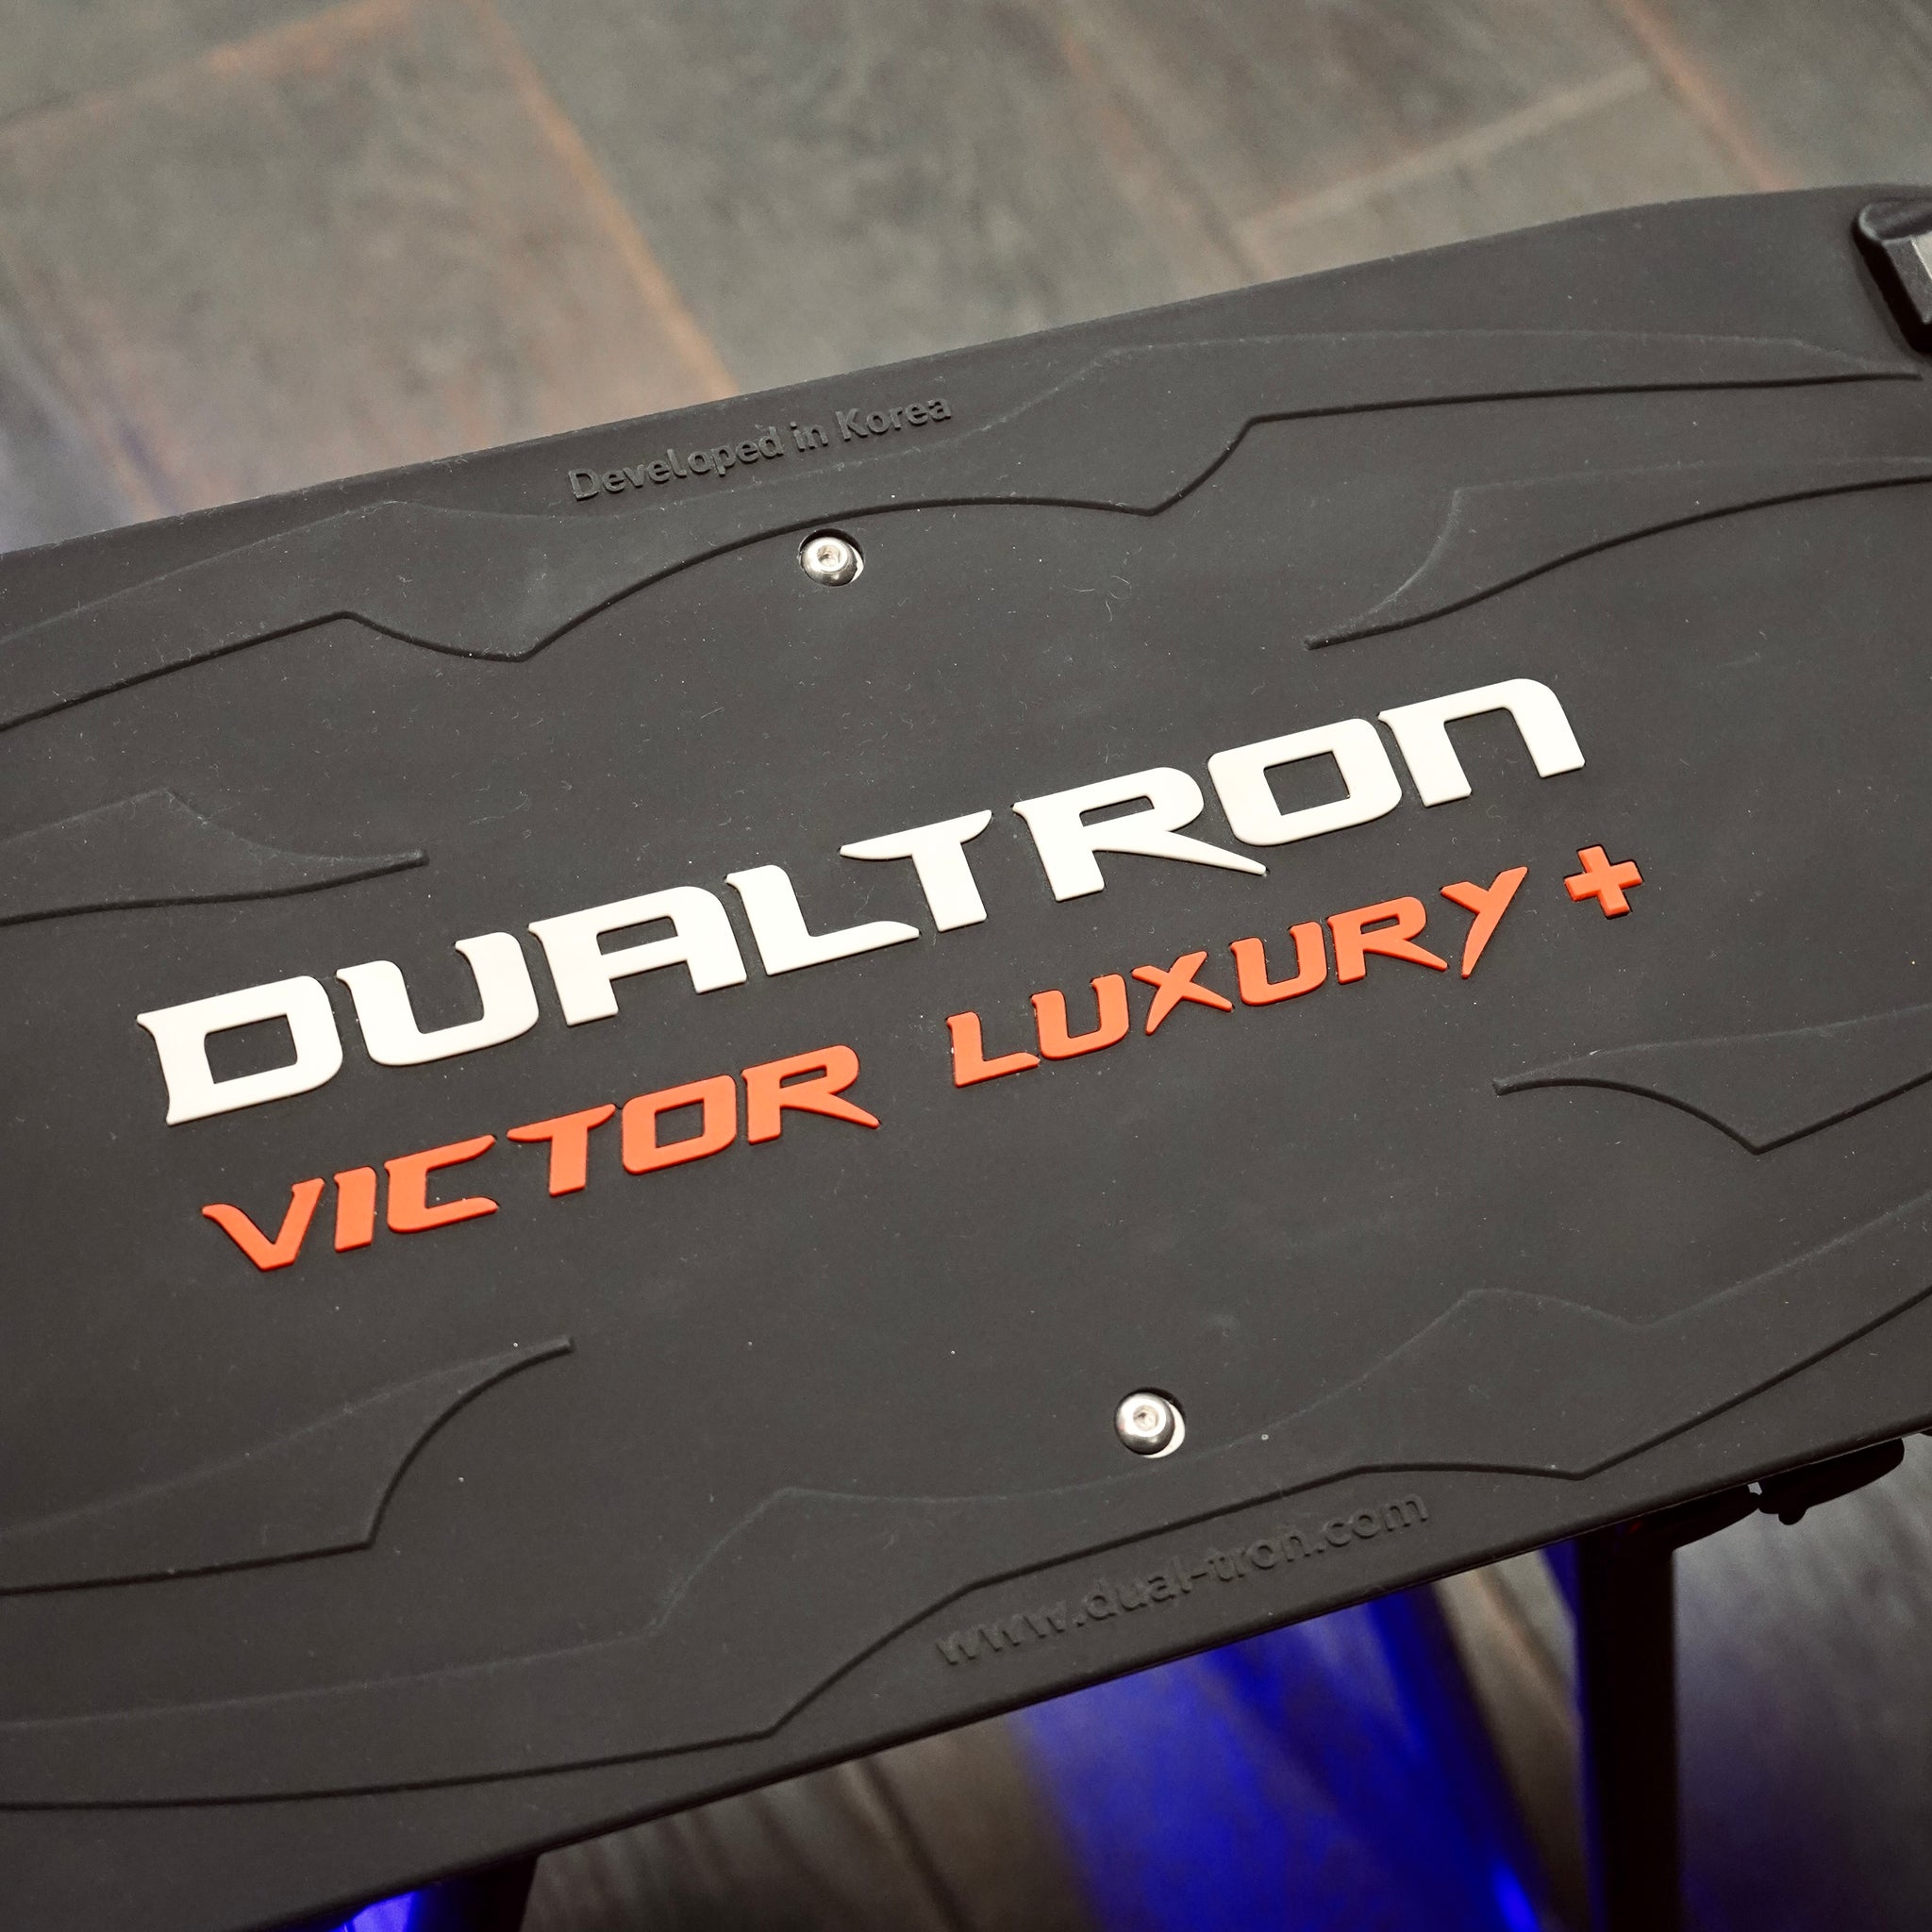 DUALTRON Victor Luxury Plus 28Ah – Velo-city